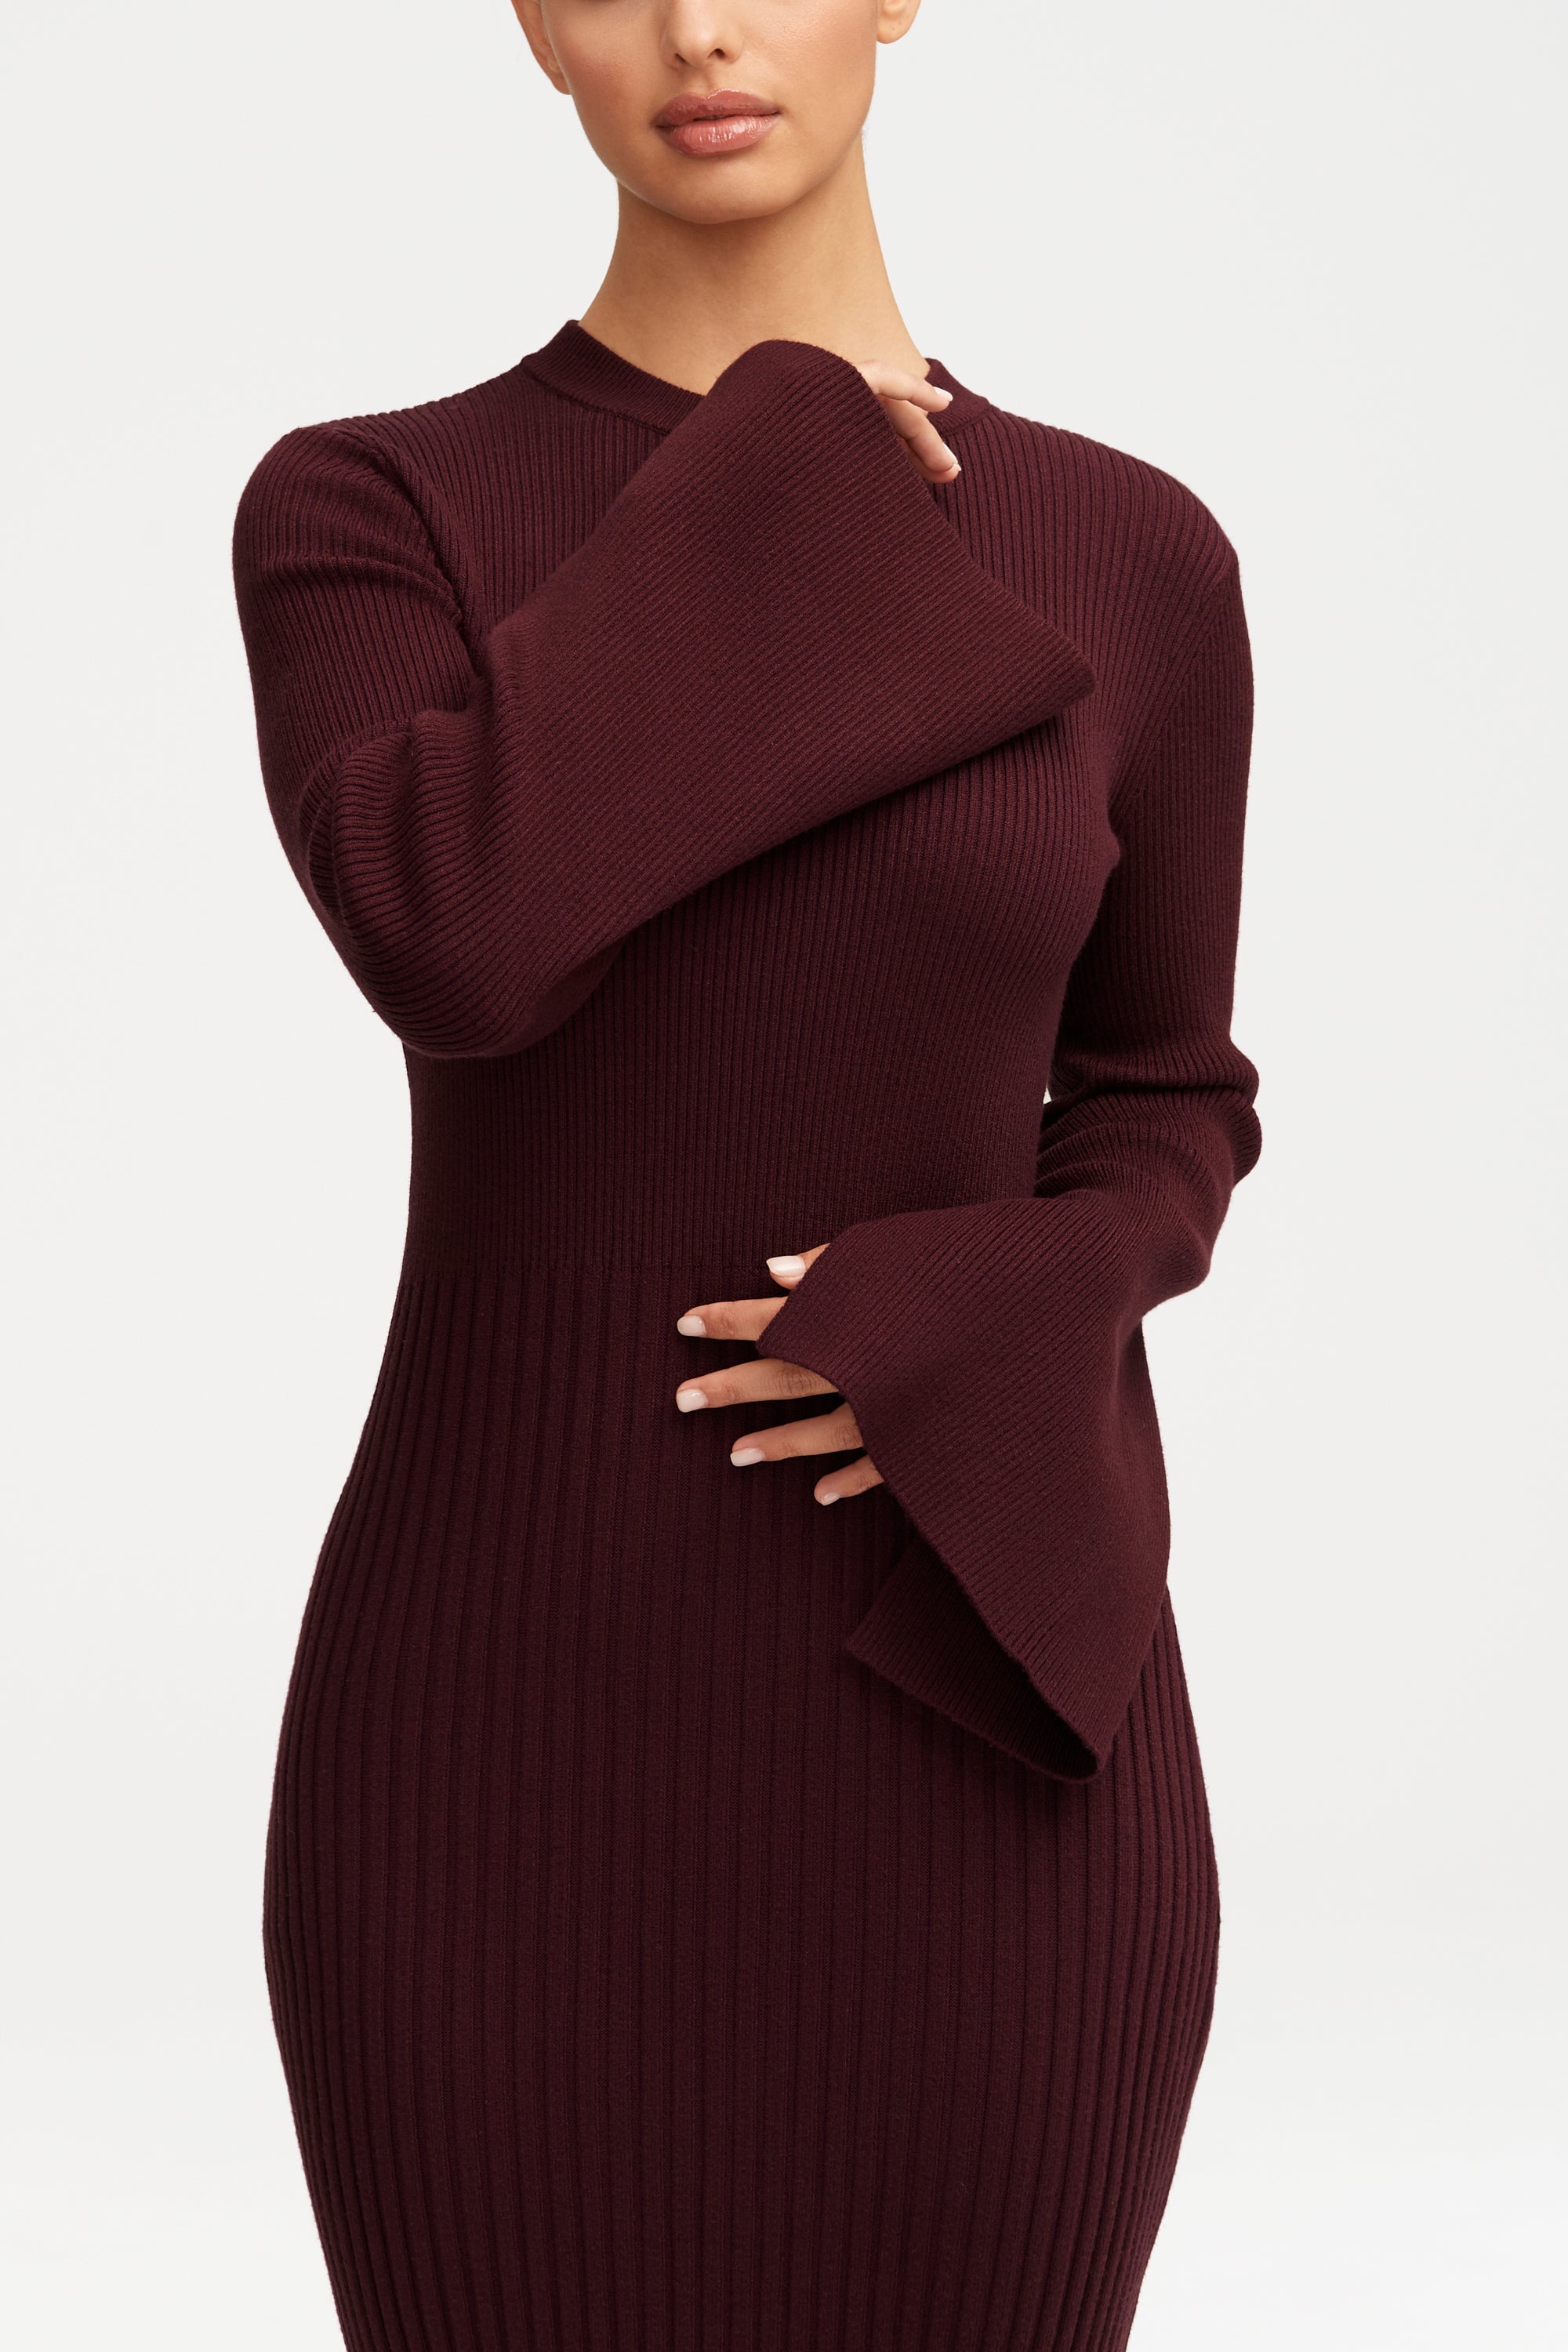 Kourtney Ribbed Knit Maxi Dress - Chocolate Plum Clothing Veiled 